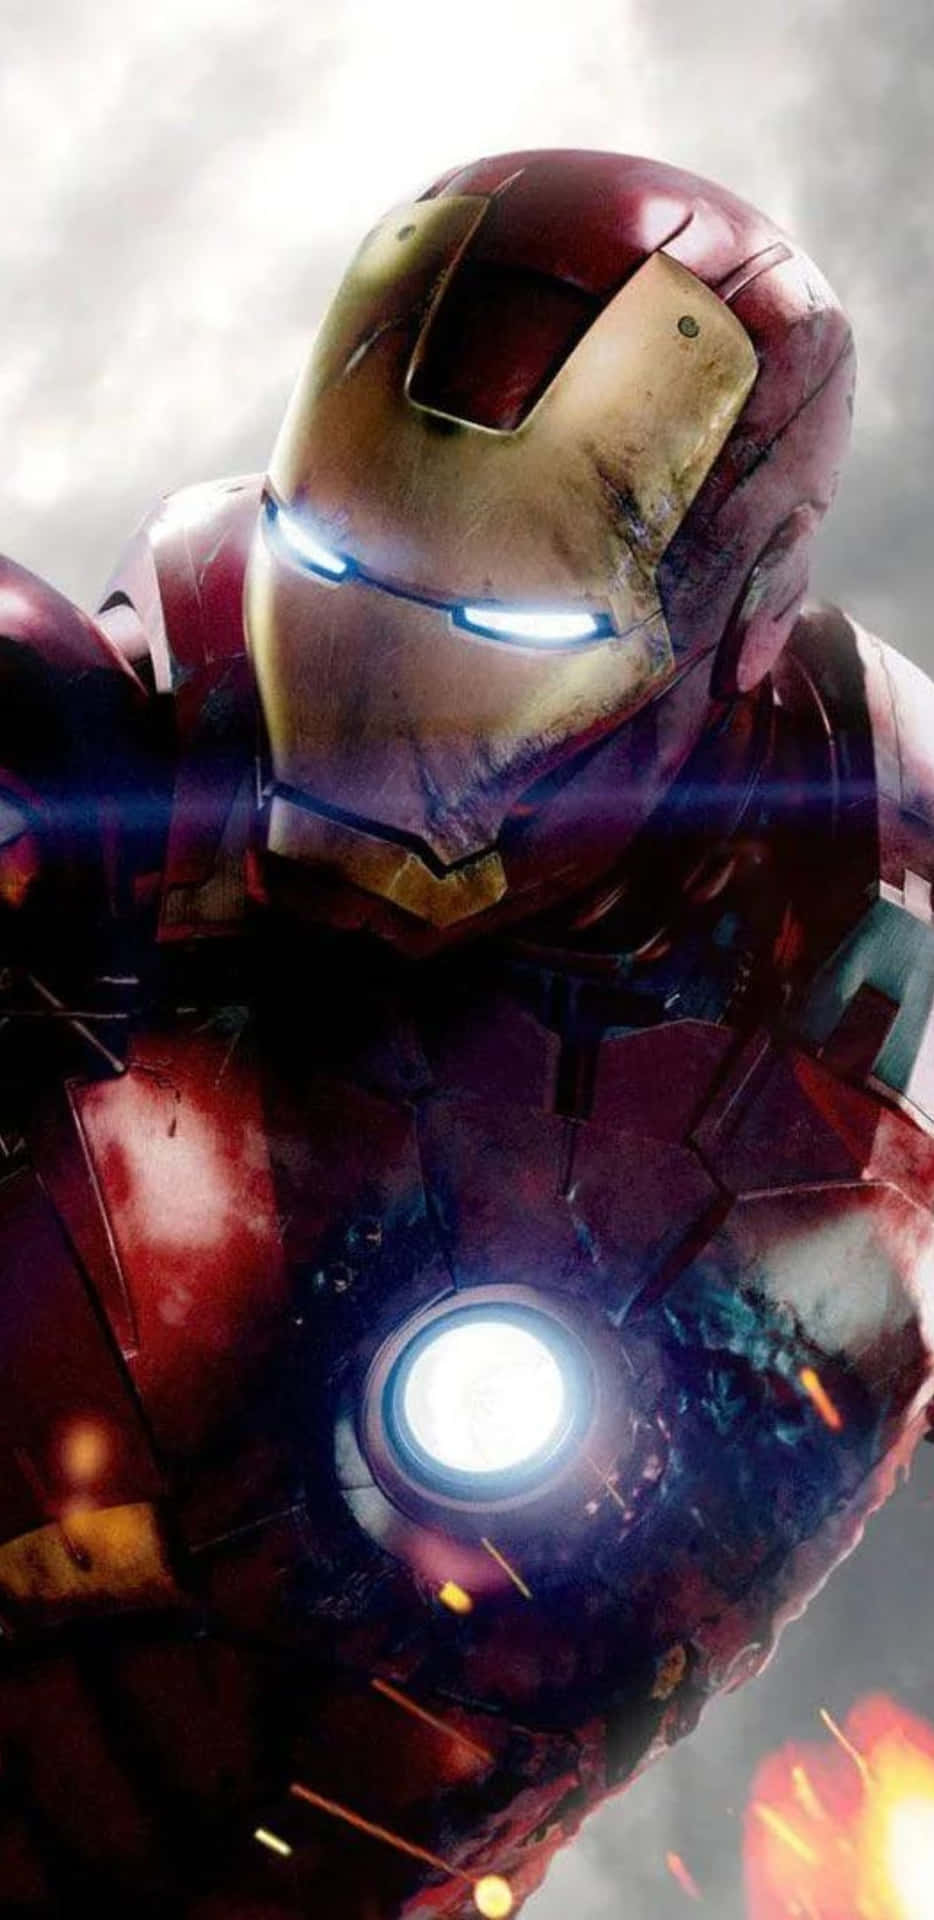 Fondode Pantalla De Pixel 3xl Con Los Ojos Brillantes De Iron Man.